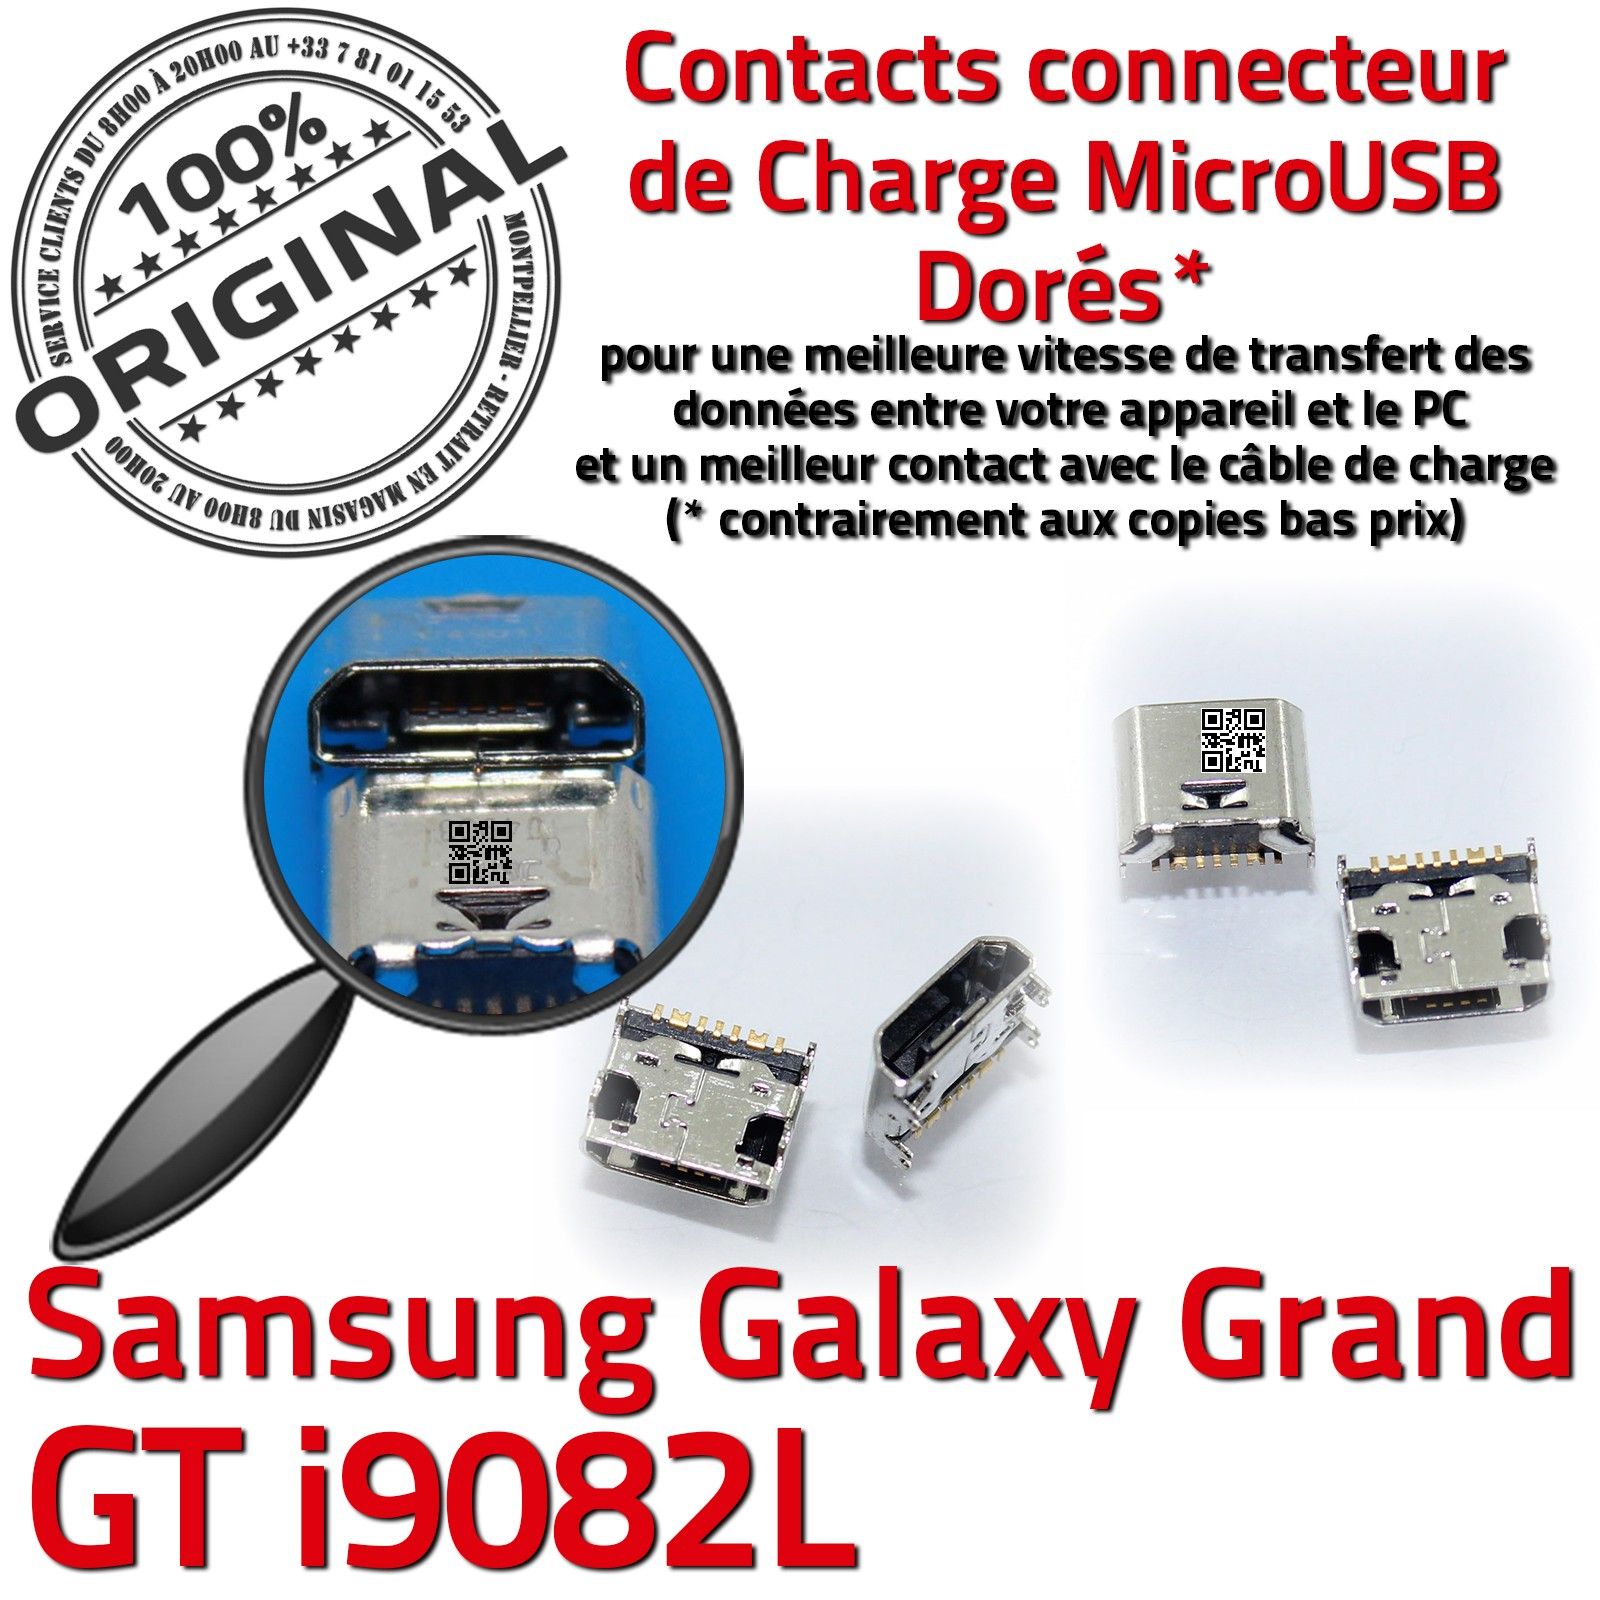 Samsung Galaxy Grand GT-i9082L Prise de charge MicroUSB Qualité ORIGINAL à souder Pins Dorés Dock Fiche Connector Chargeur SLOT